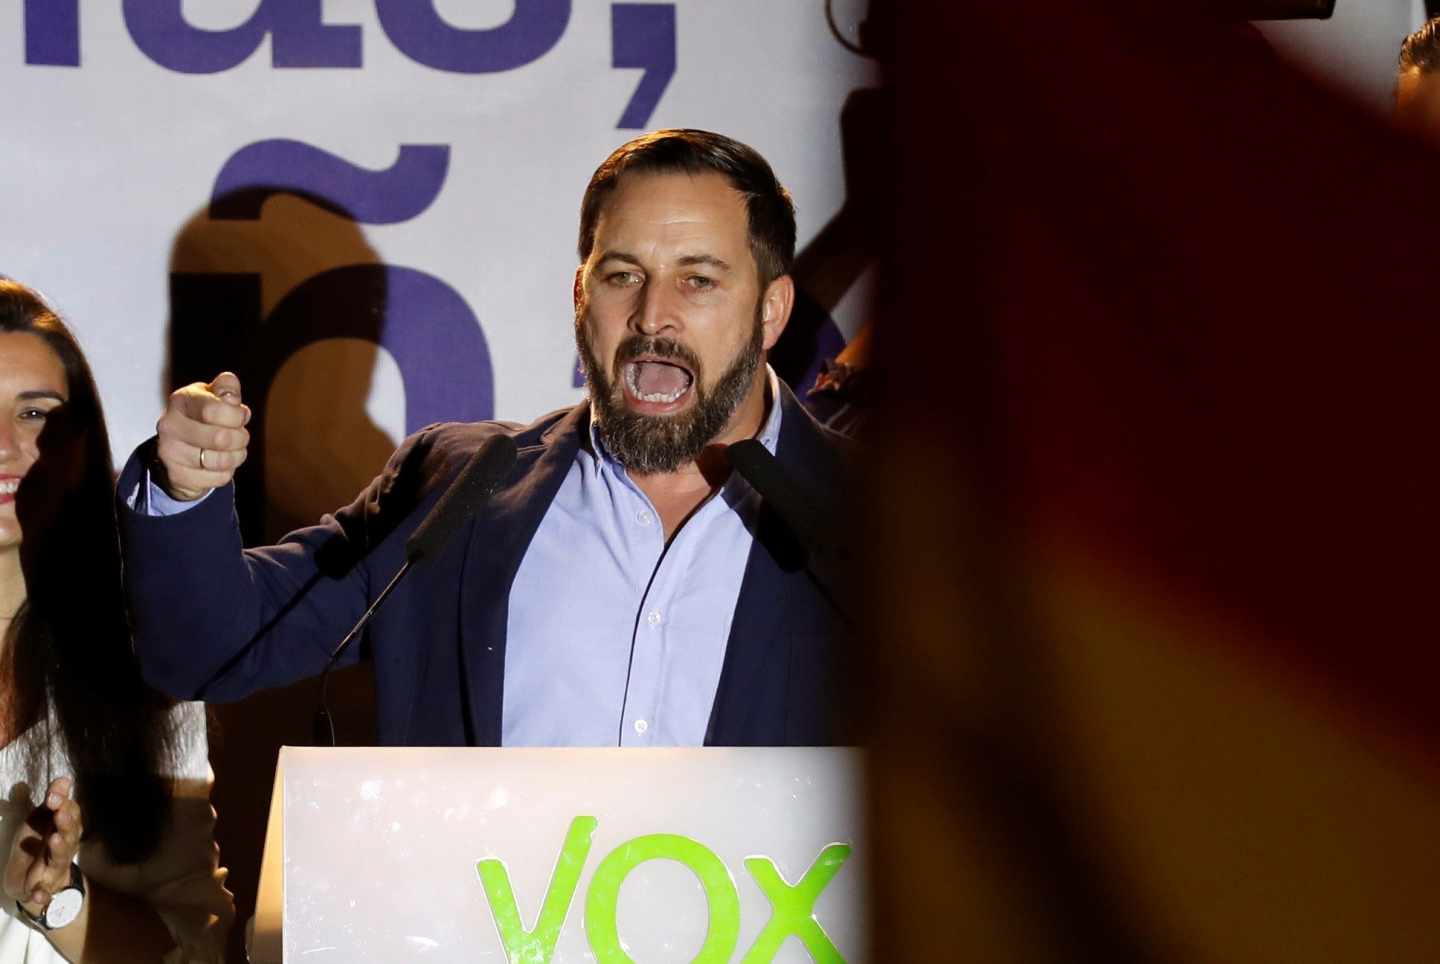 El líder de Vox, Santiago Abascal, tras los resultados electorales.